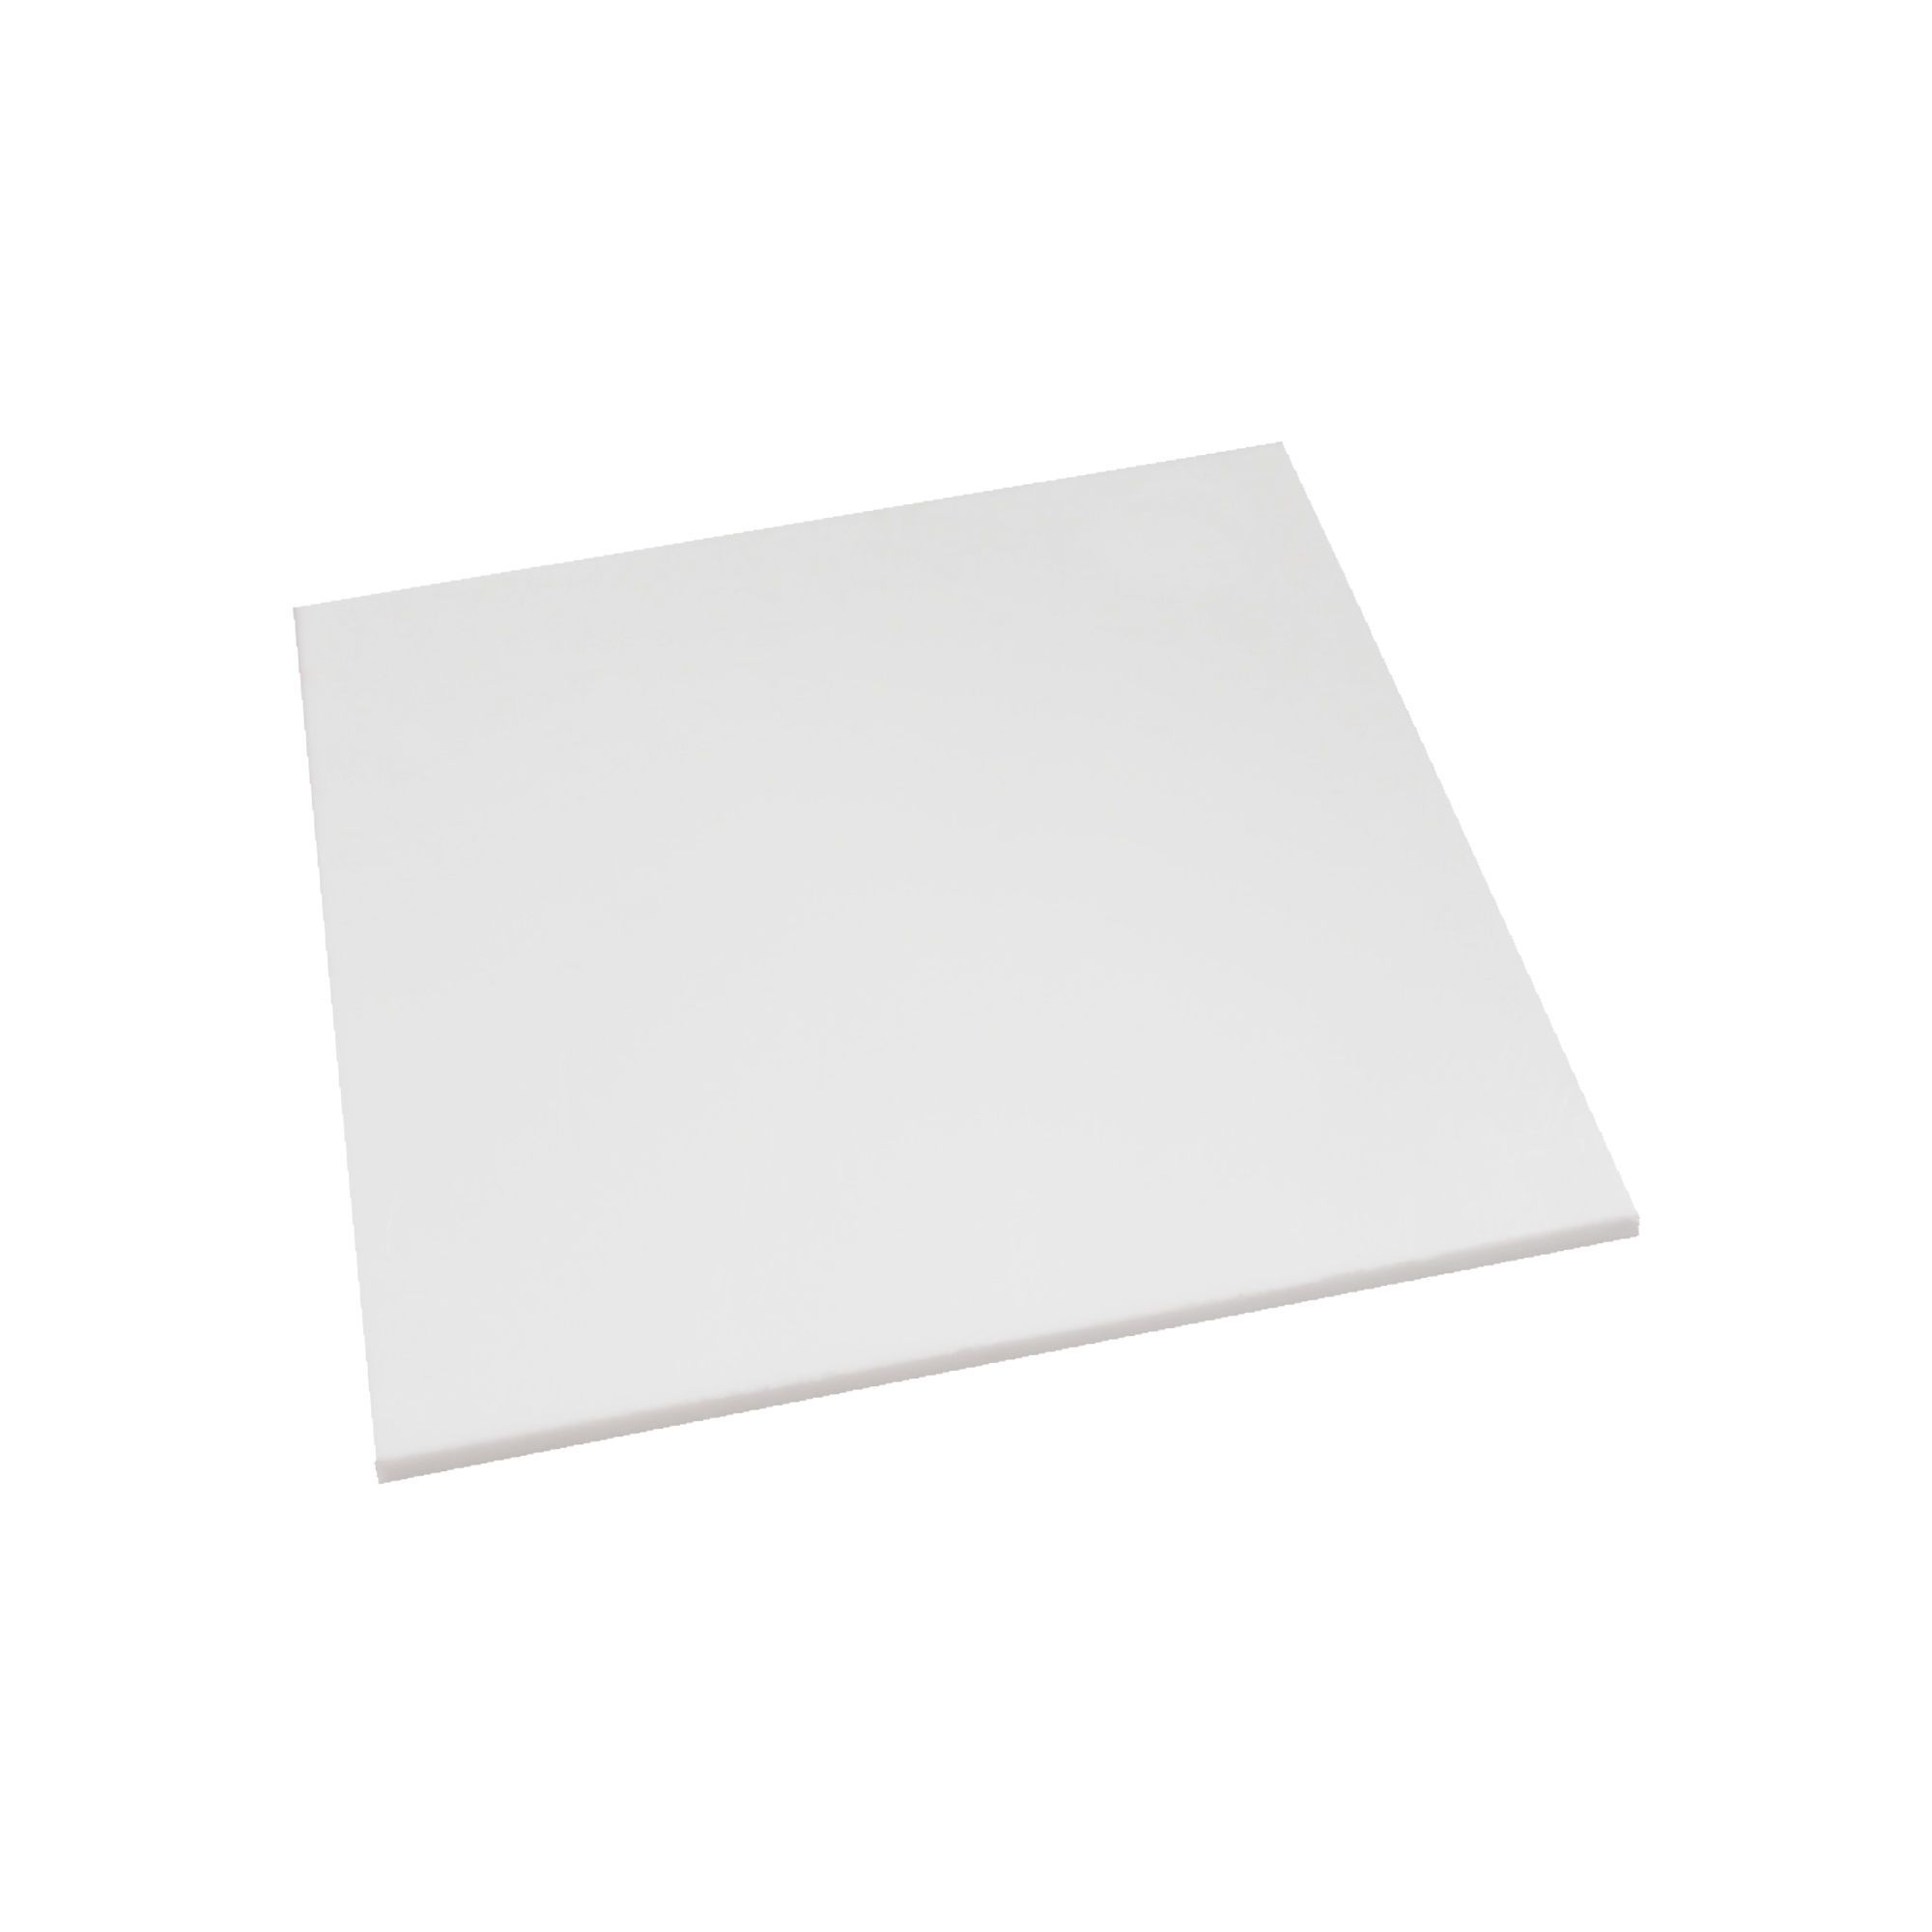 Feuille de plastique ondulé blanc de 24 po x 36 po x 0,157 po - Paquet de 15